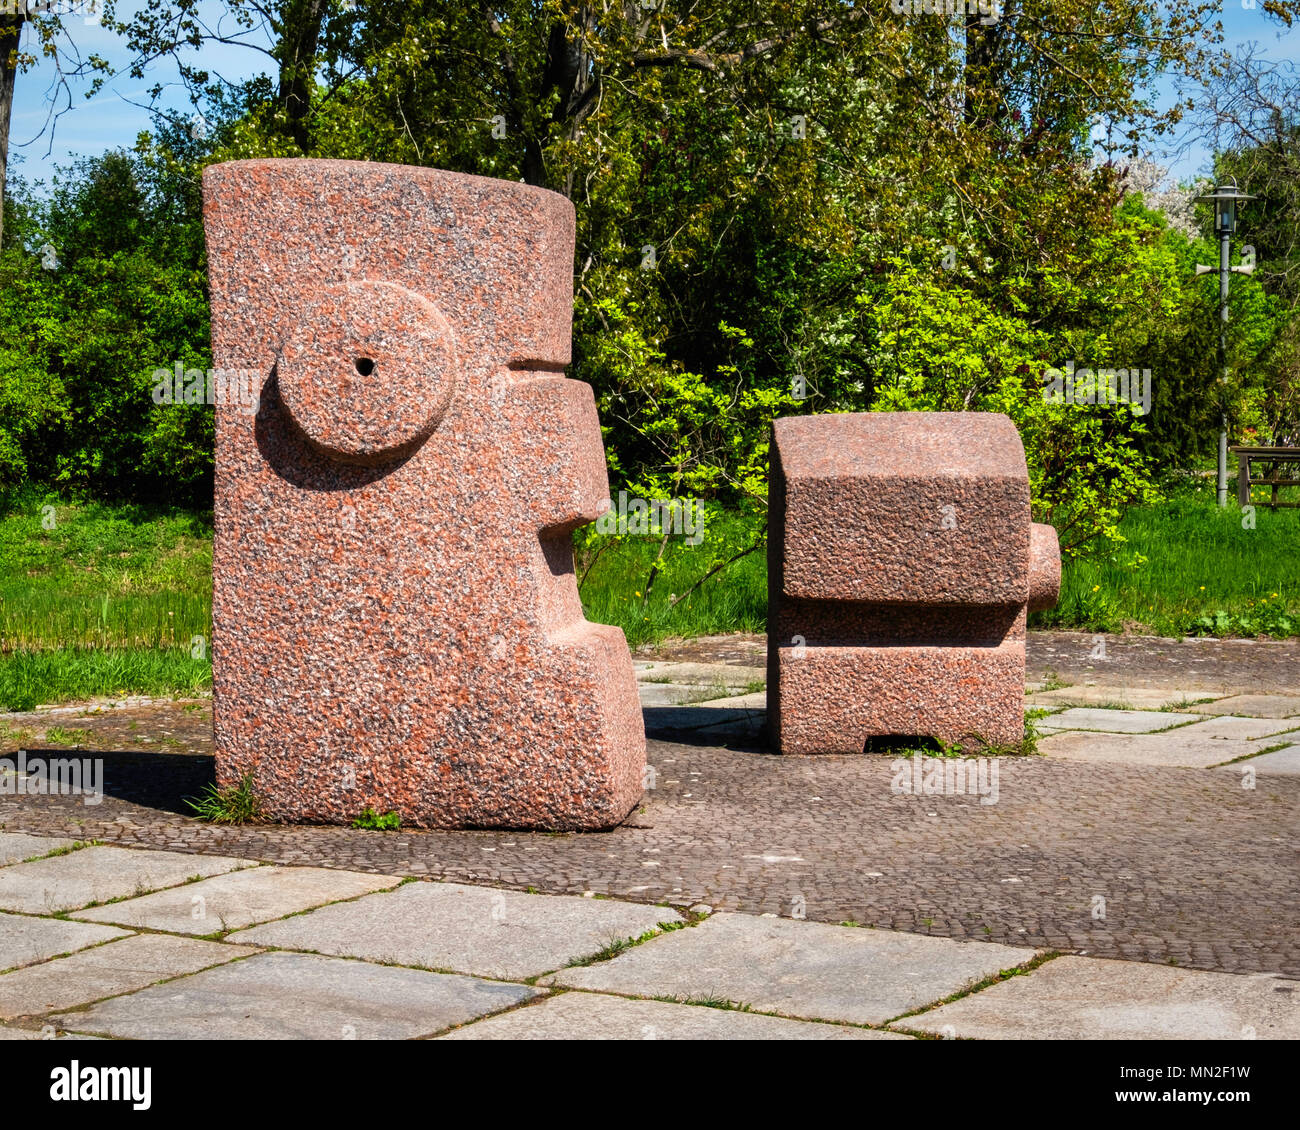 Britzer Garten, Neukölln, Berlin, Allemagne. En 2018. Résumé de la sculpture sur pierre à l'entrée du jardin . Banque D'Images